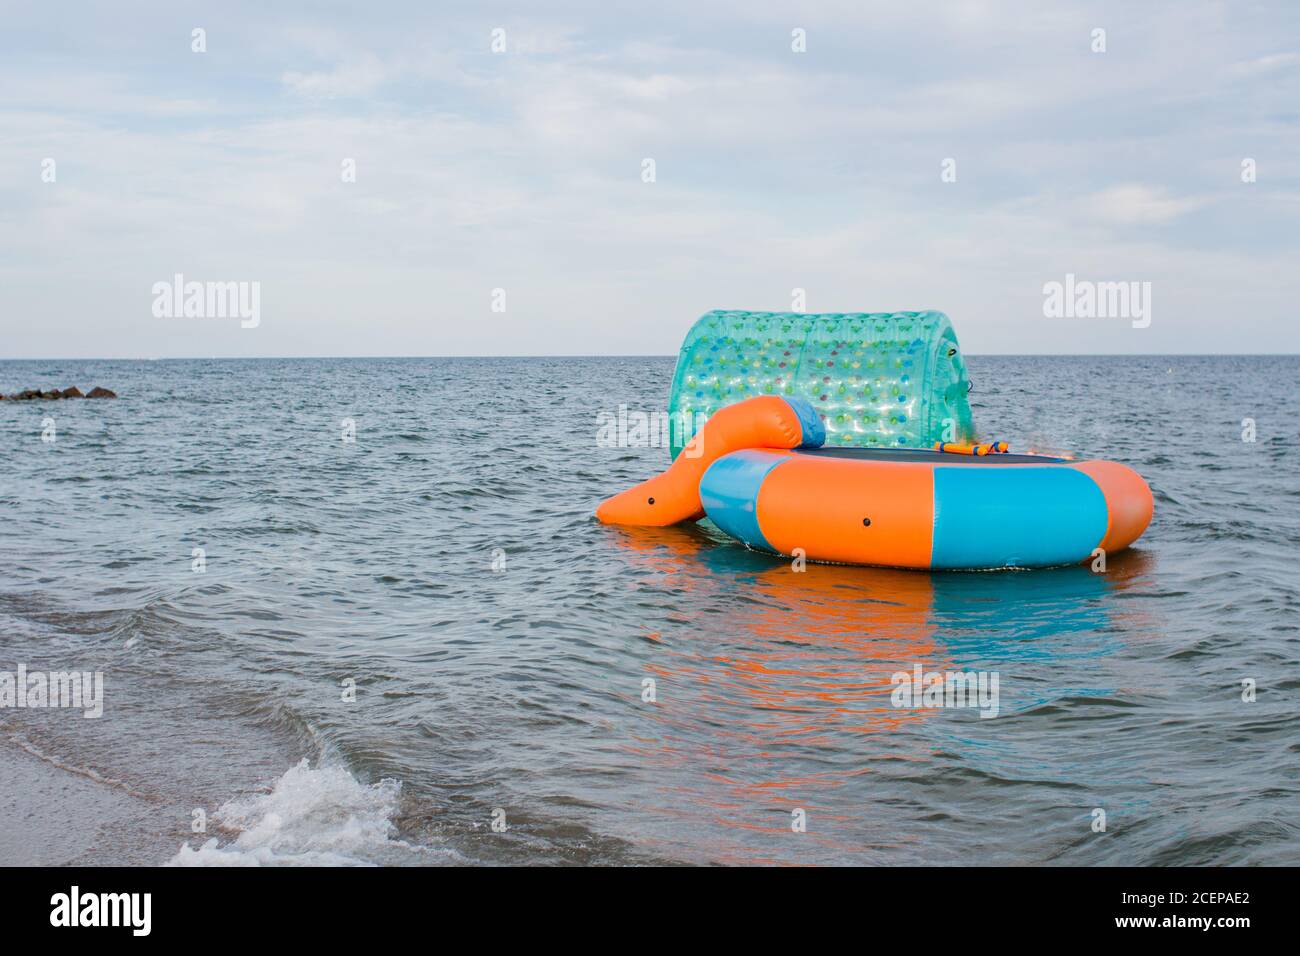 Ein Trampolin auf dem Wasser am Meer Stockfotografie - Alamy